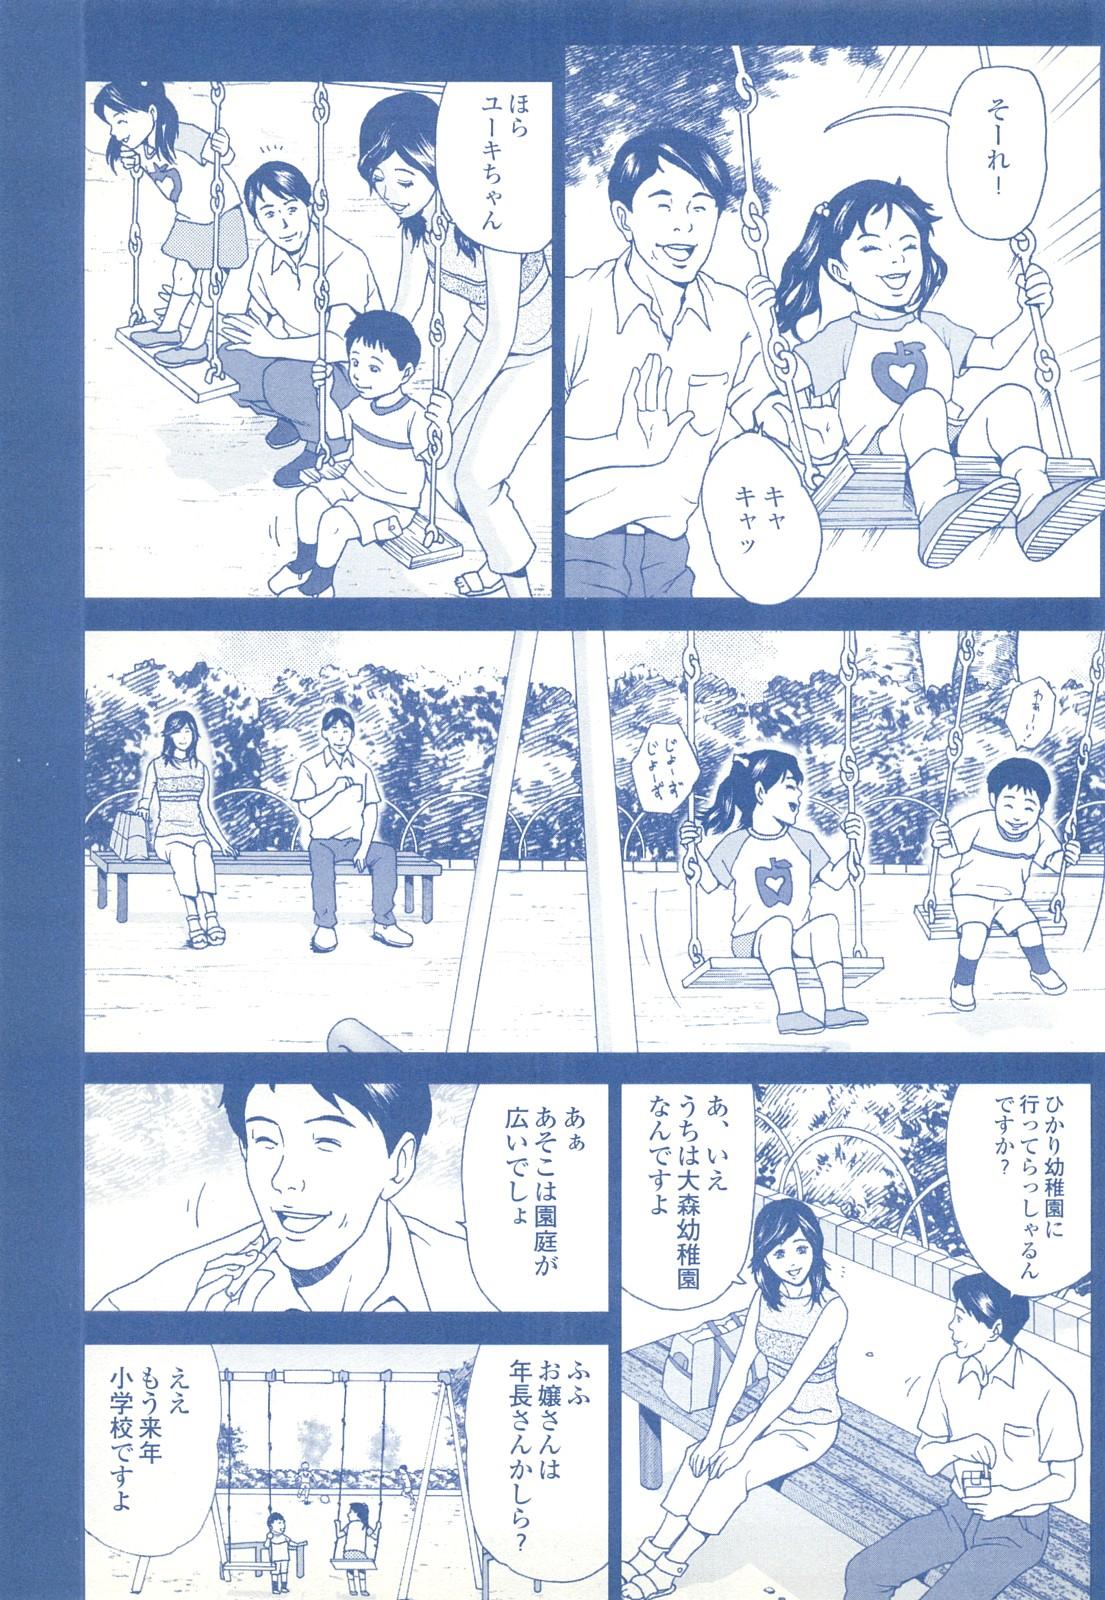 コミック裏モノJAPAN Vol.18 今井のりたつスペシャル号 196